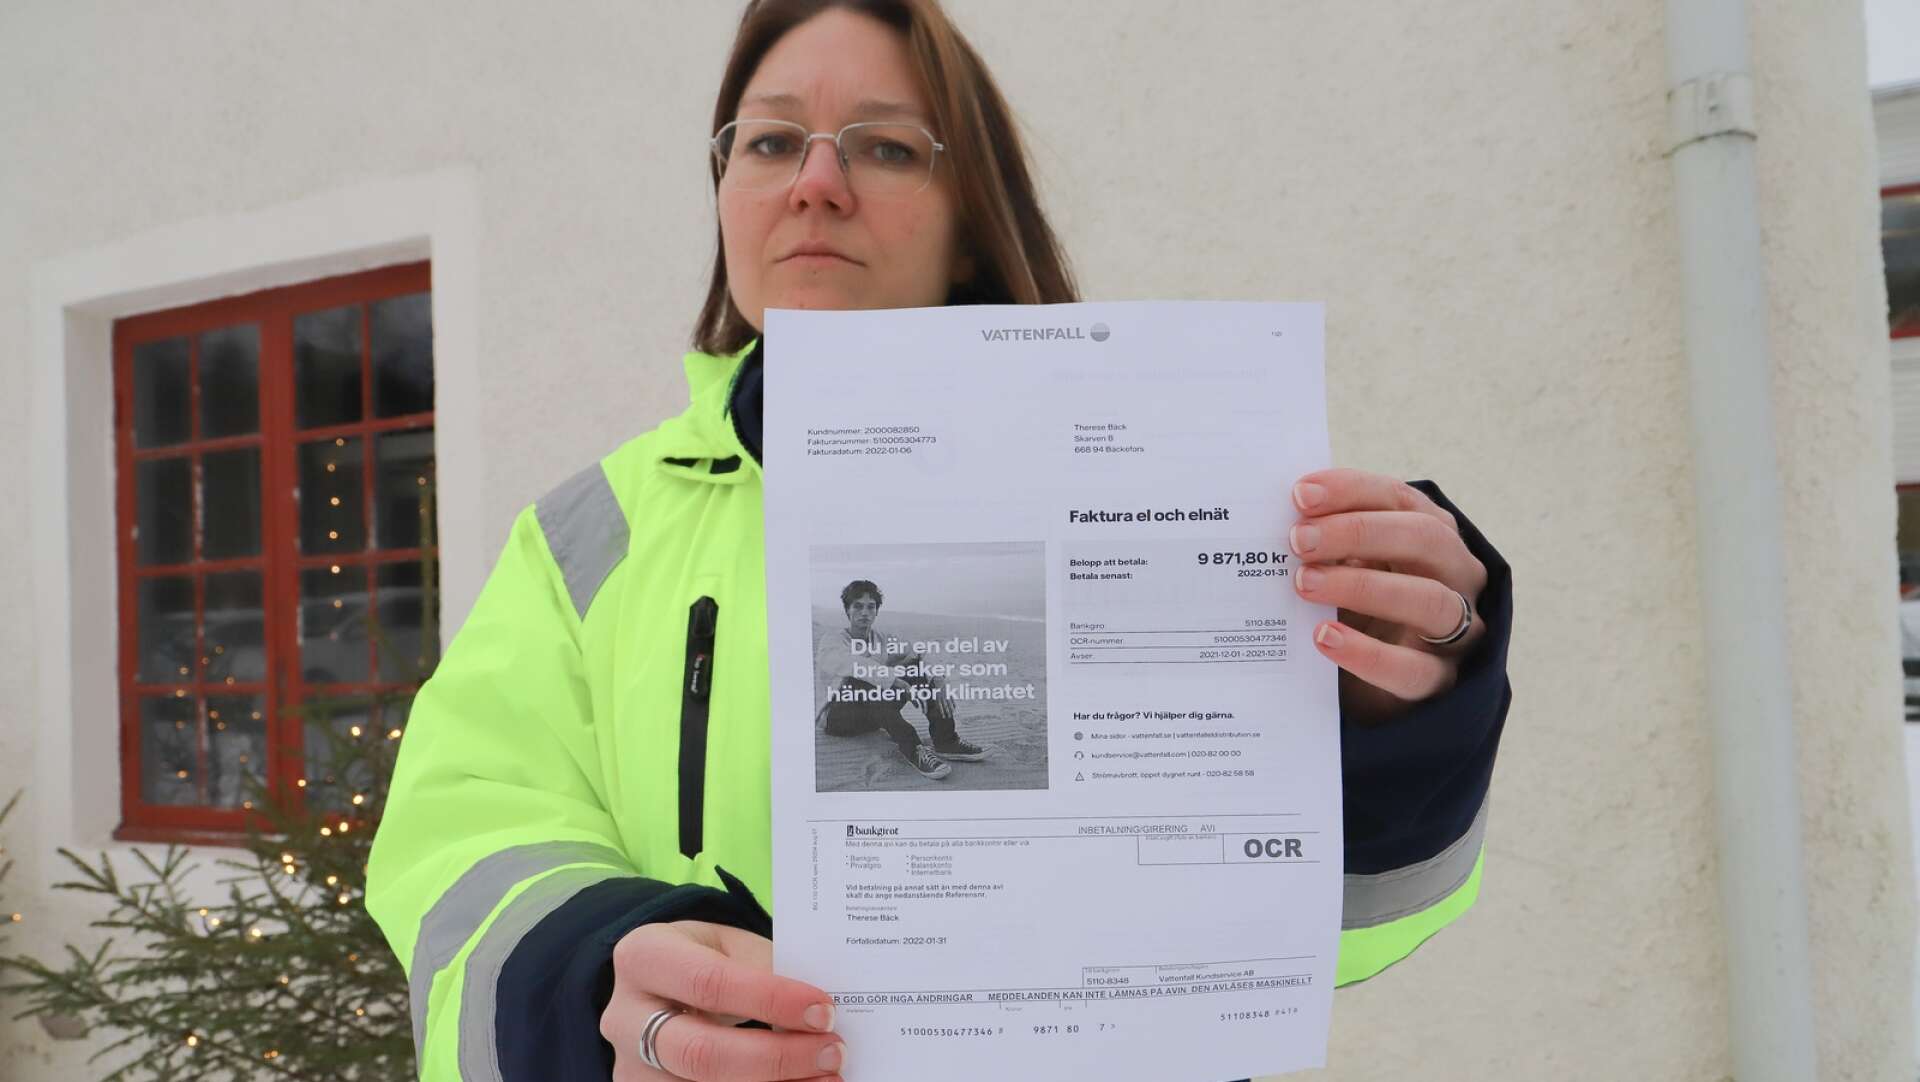 Therese Bäck och hennes sambo i Bäckefors får ta till sparkontot för att betala den kraftigt höjda elräkningen som damp ner för december månad.